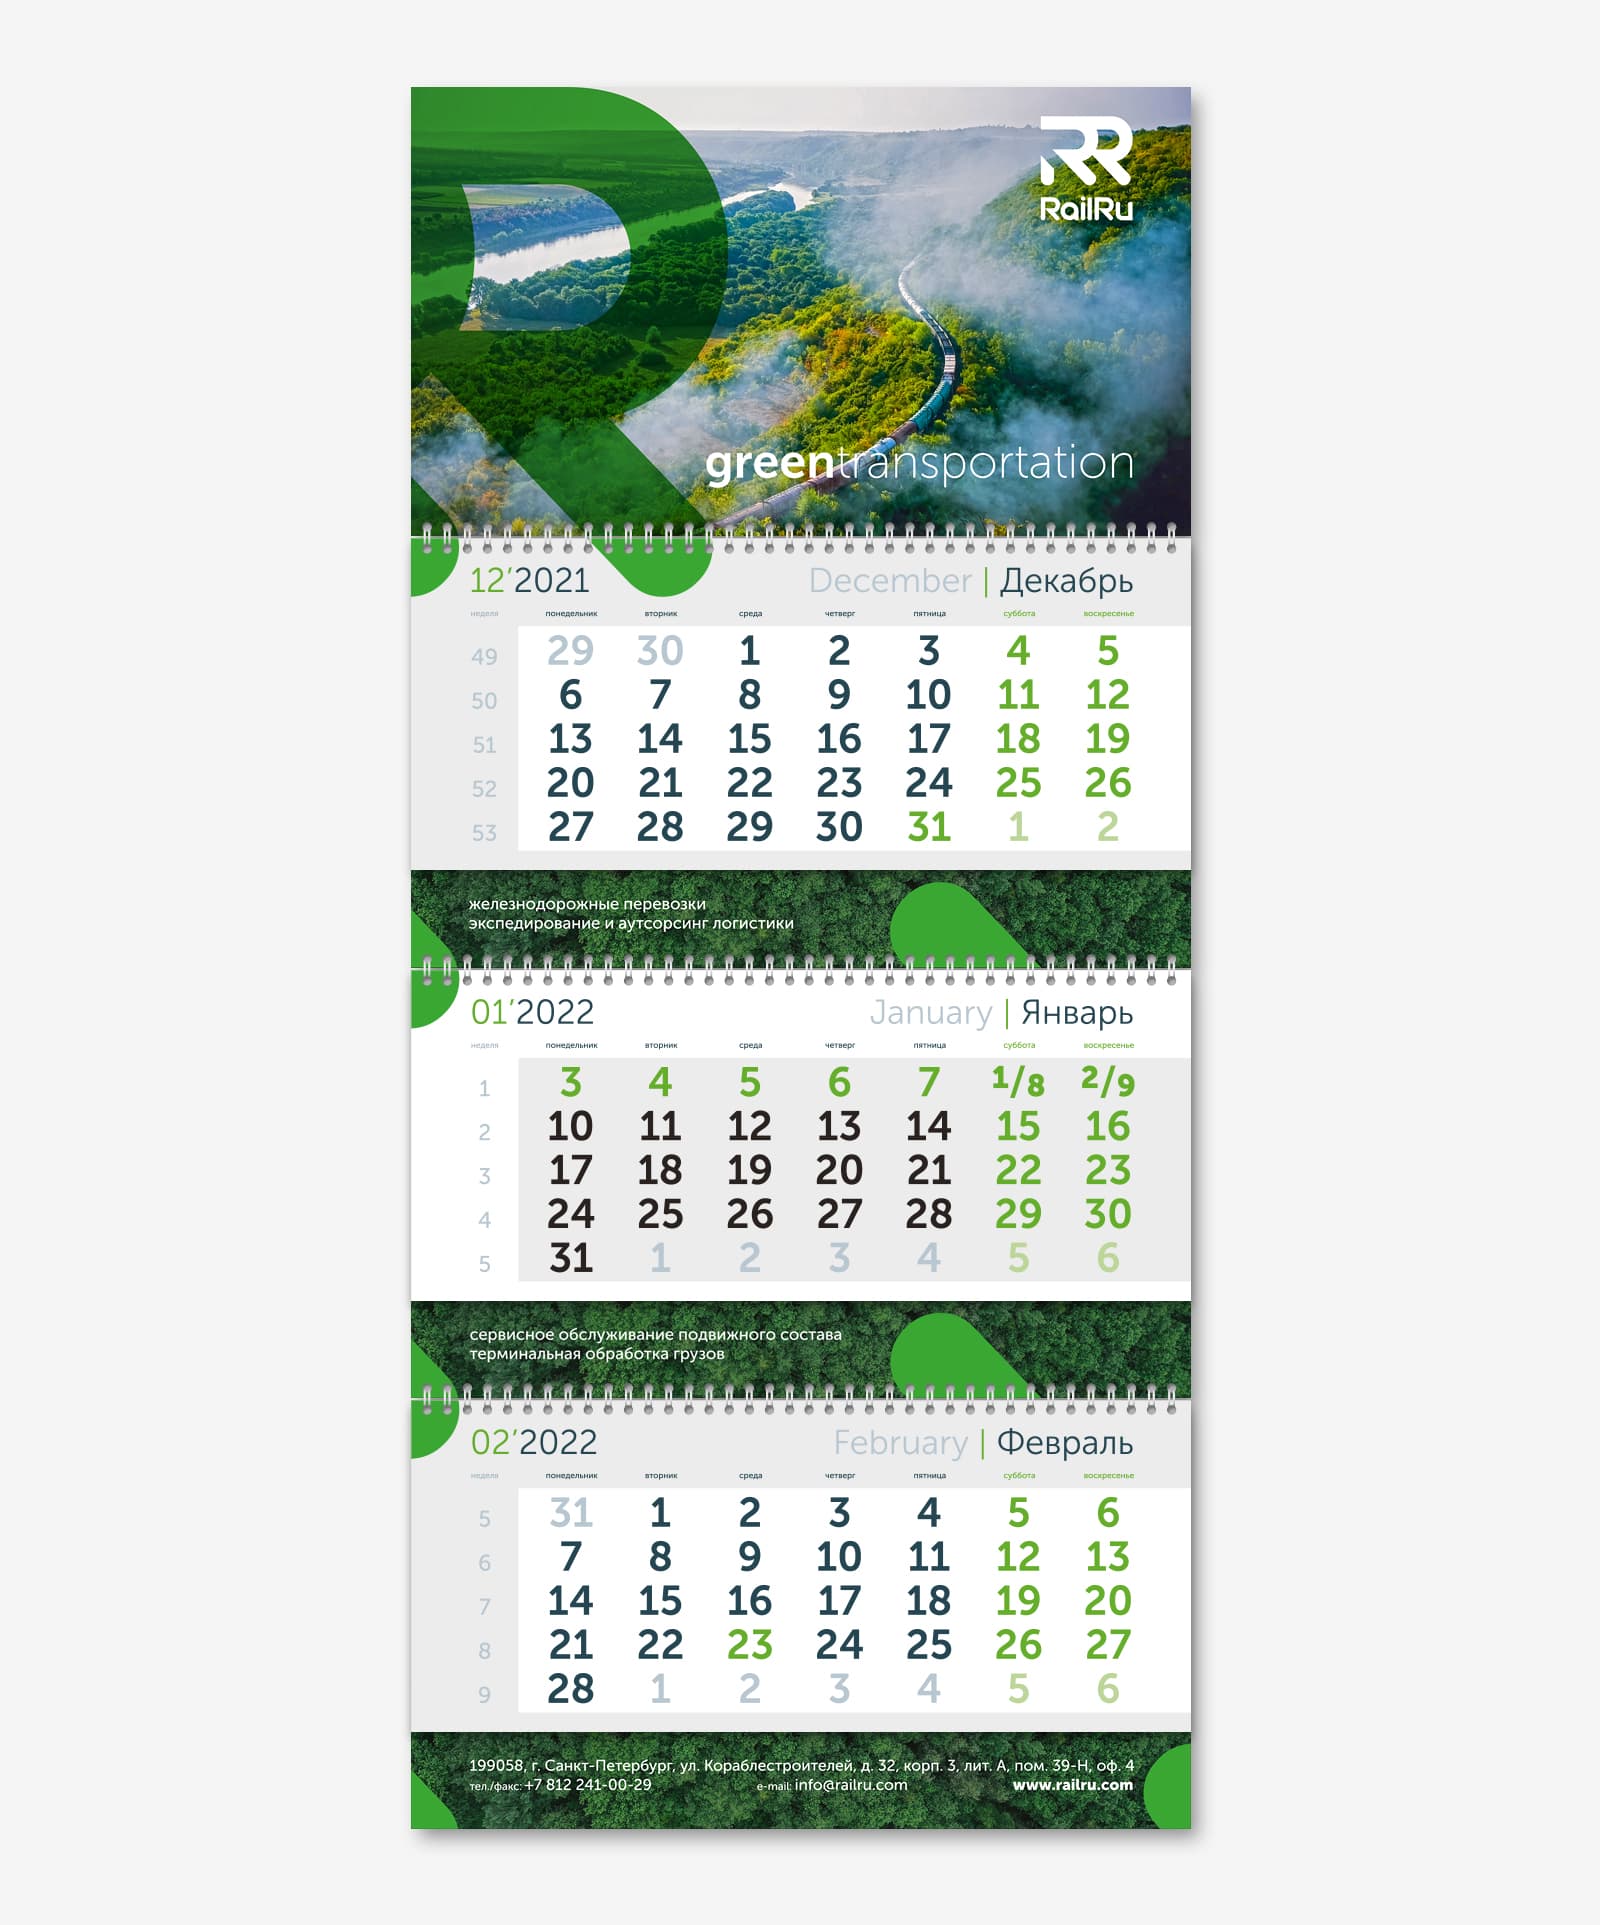 Календарь Трио для транспортной компании RailRU на 2022 год